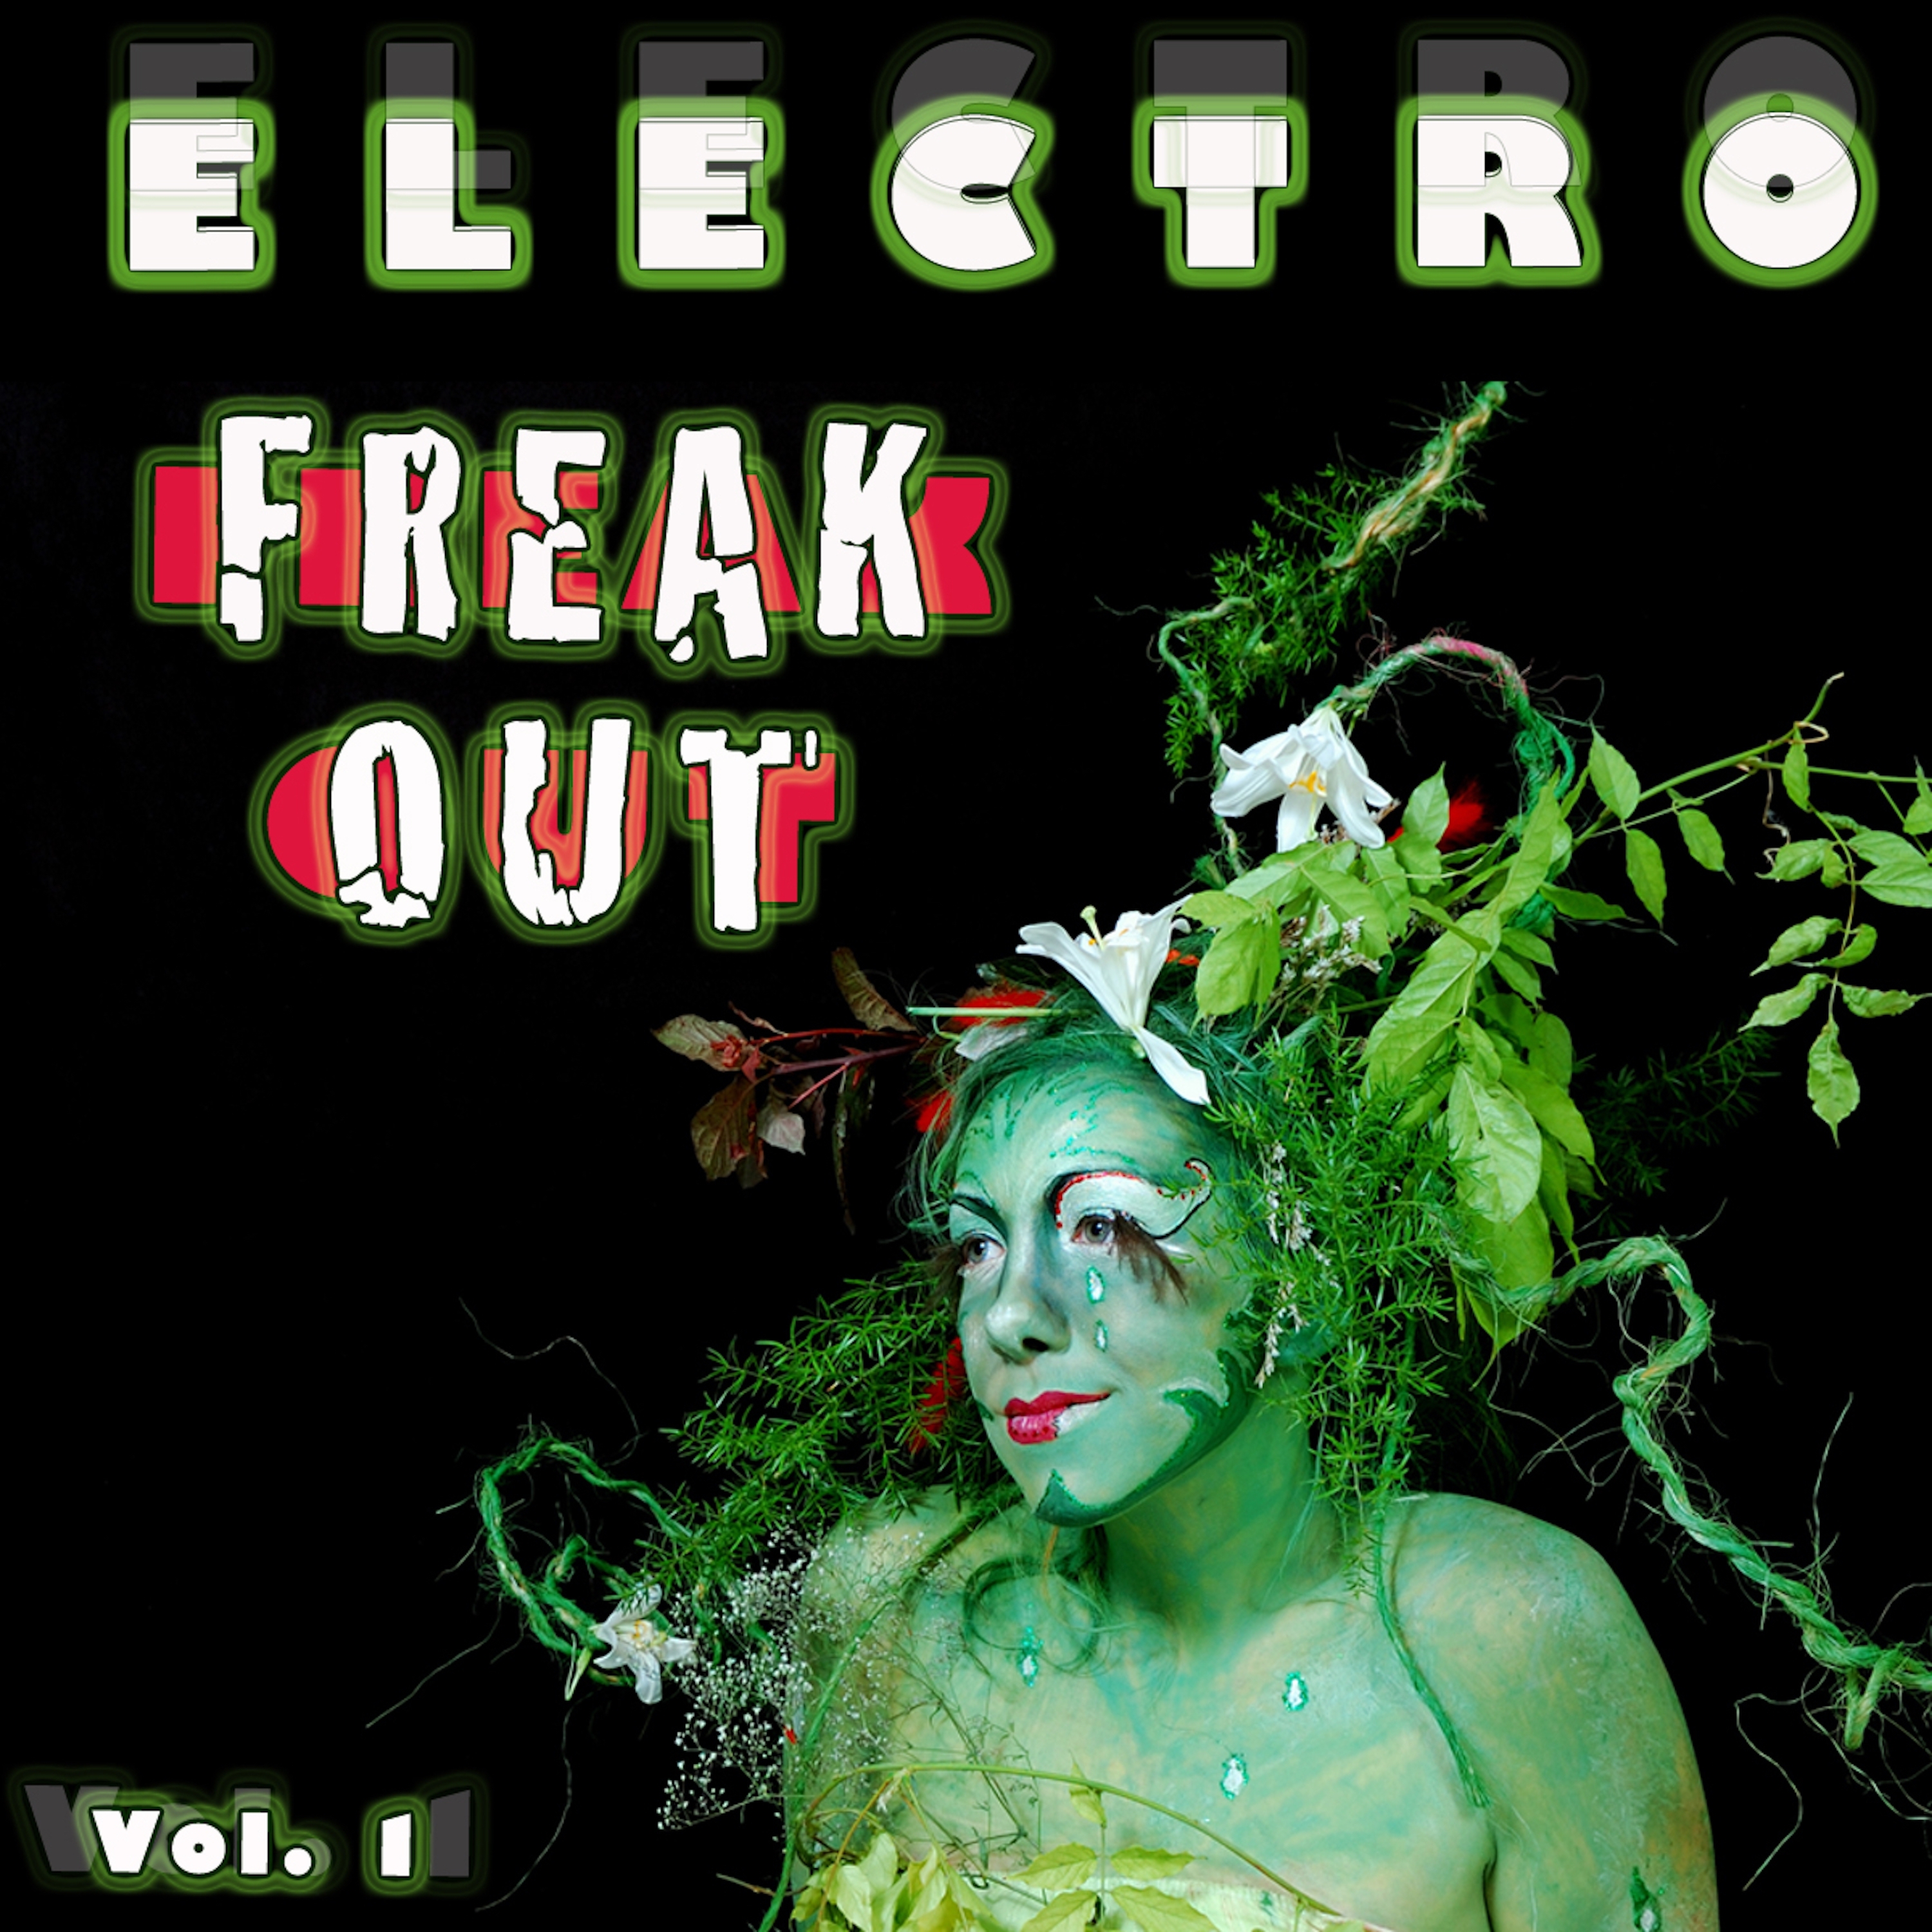 Electro Freak Out, Vol. 1